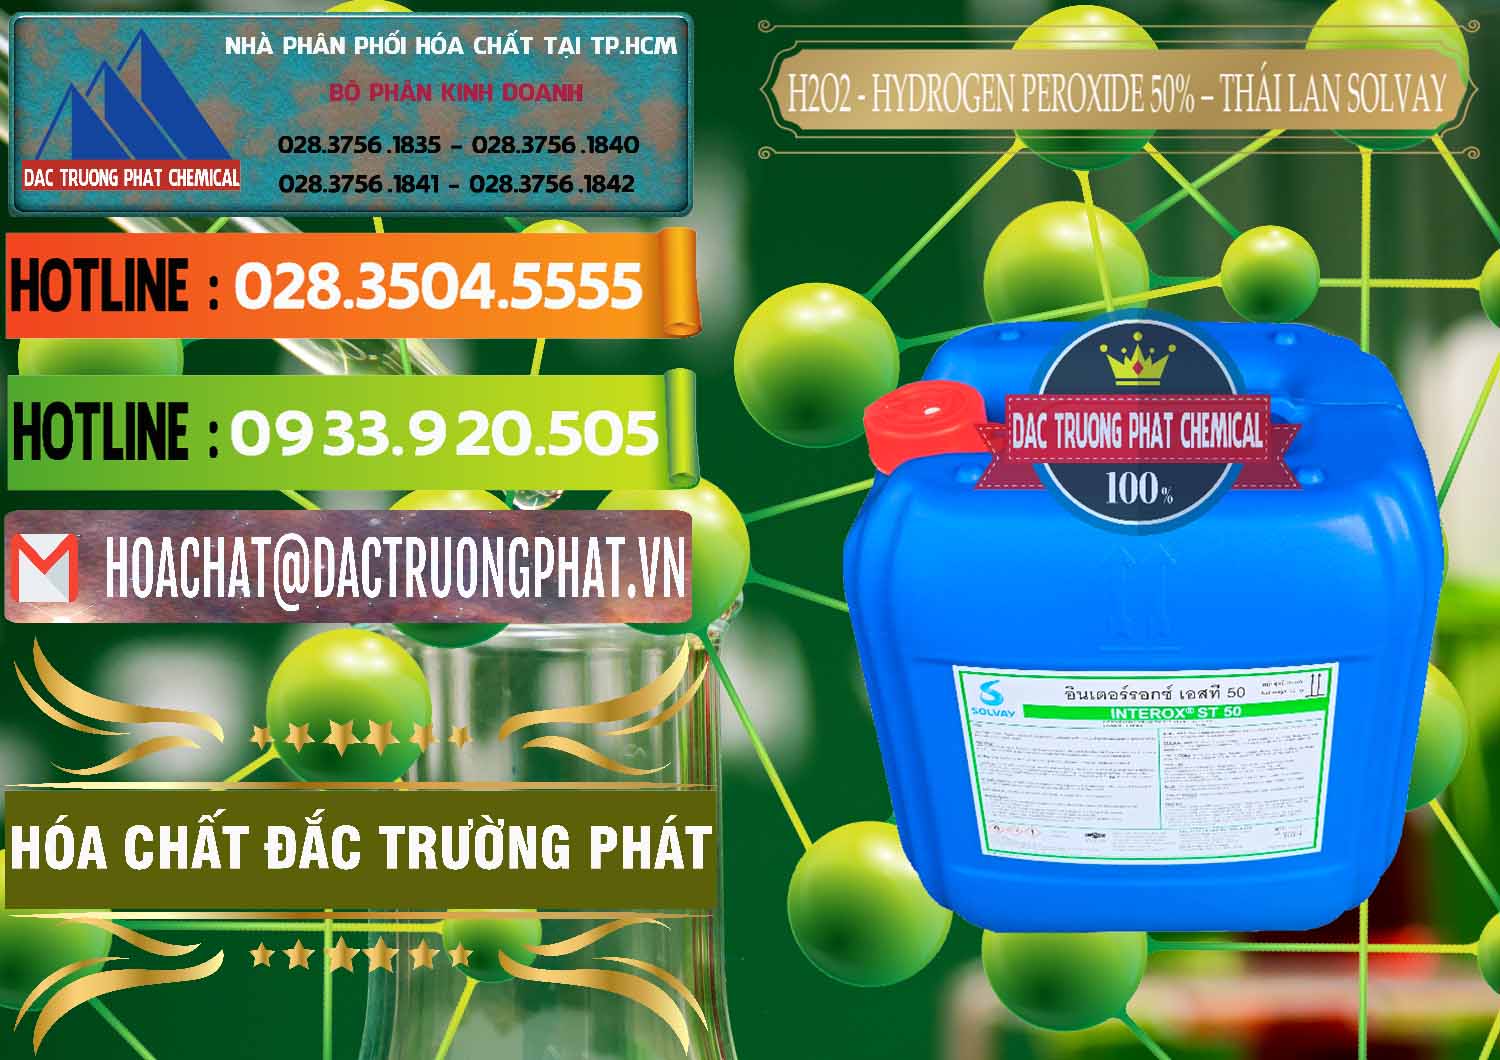 Nơi chuyên bán & cung cấp H2O2 - Hydrogen Peroxide 50% Thái Lan Solvay - 0068 - Đơn vị cung ứng và phân phối hóa chất tại TP.HCM - cungcaphoachat.com.vn